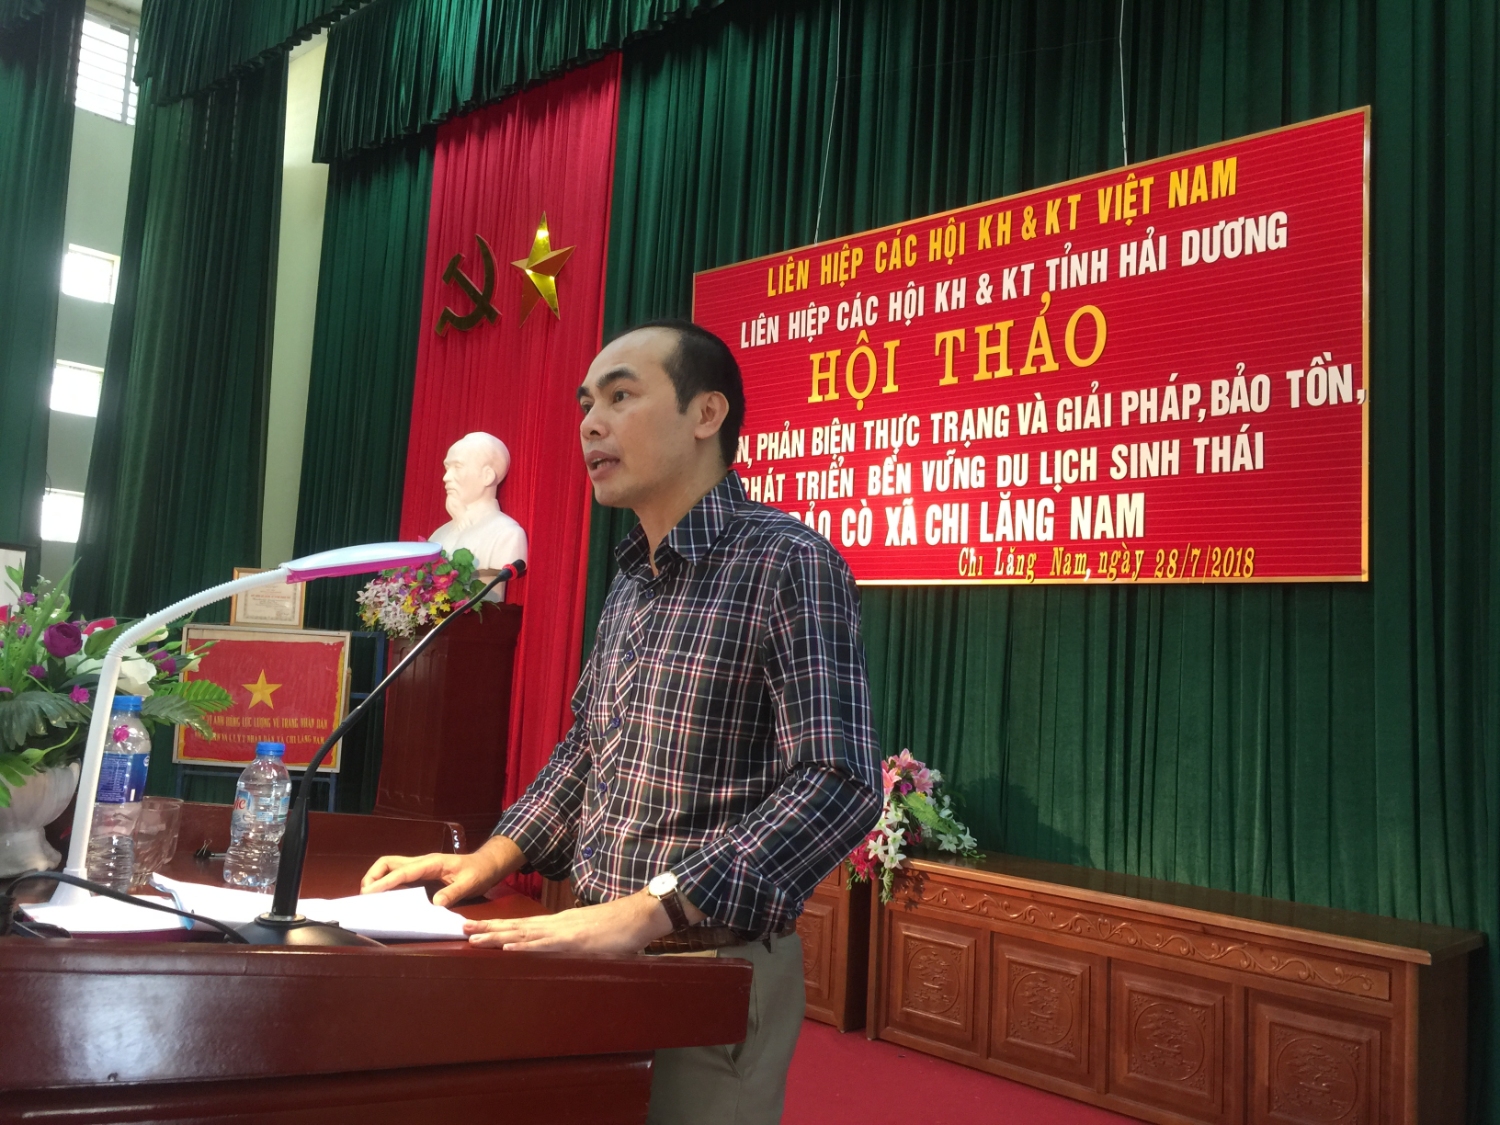 TS Nguyễn Kim Diện Chủ tịch Liên hiệp Hội phát biểu tại Hội thảo